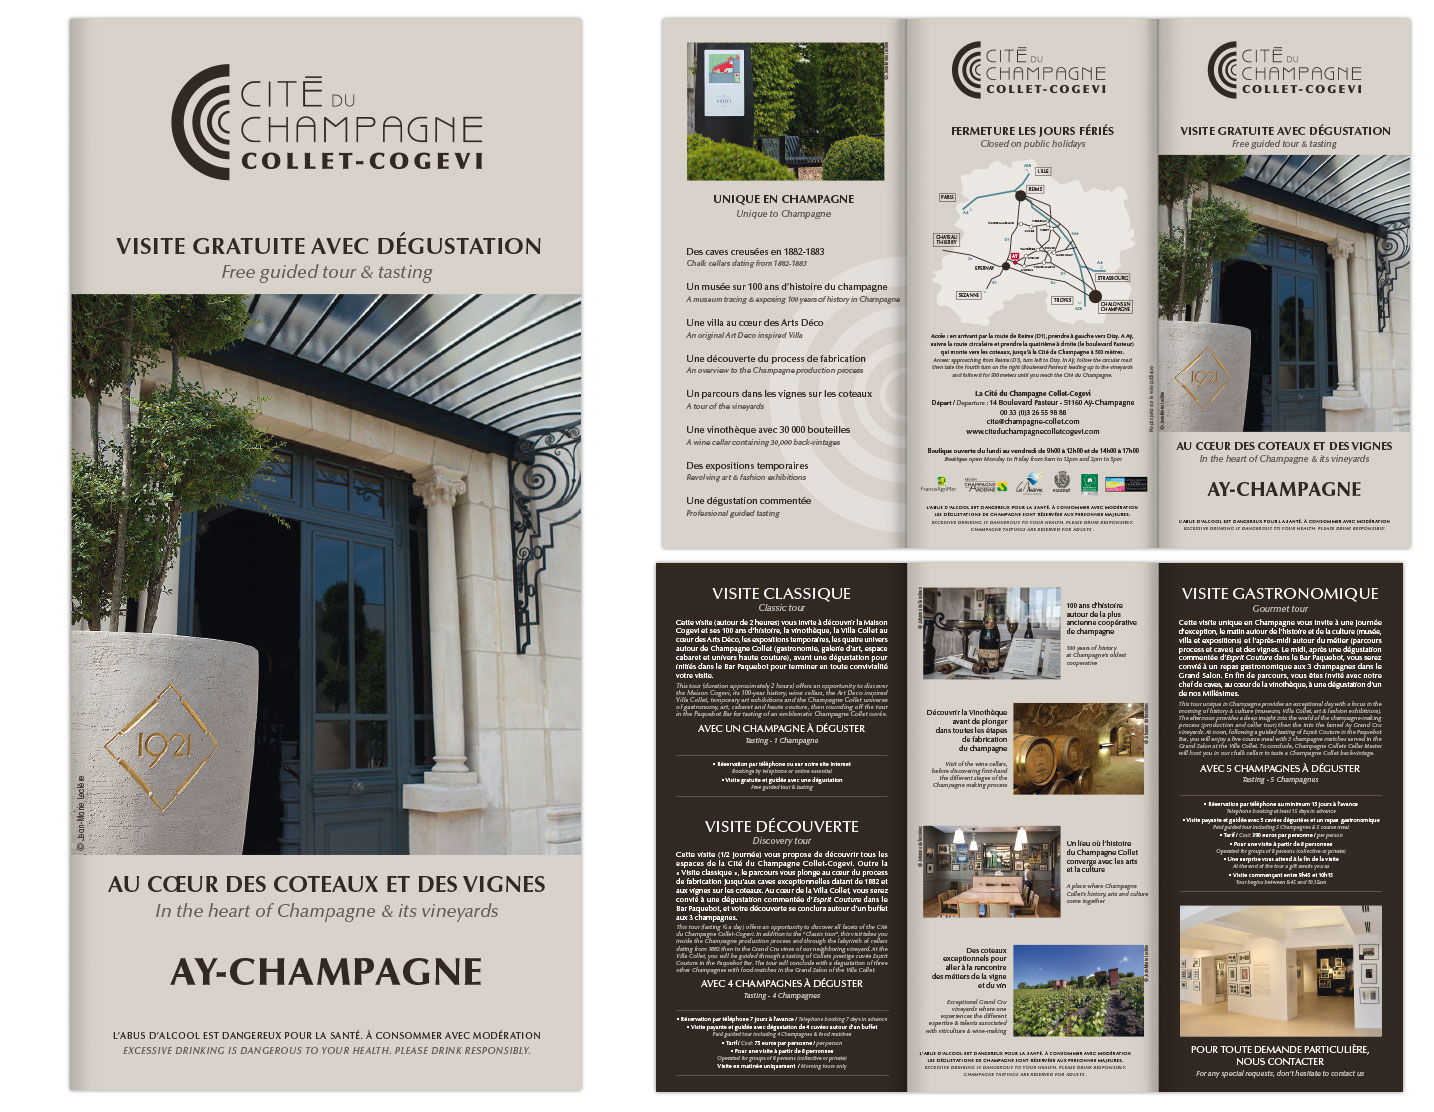 © Thiery Palau - Création d'un dépliant pour la Cité du Champagne Collet-Cogévi